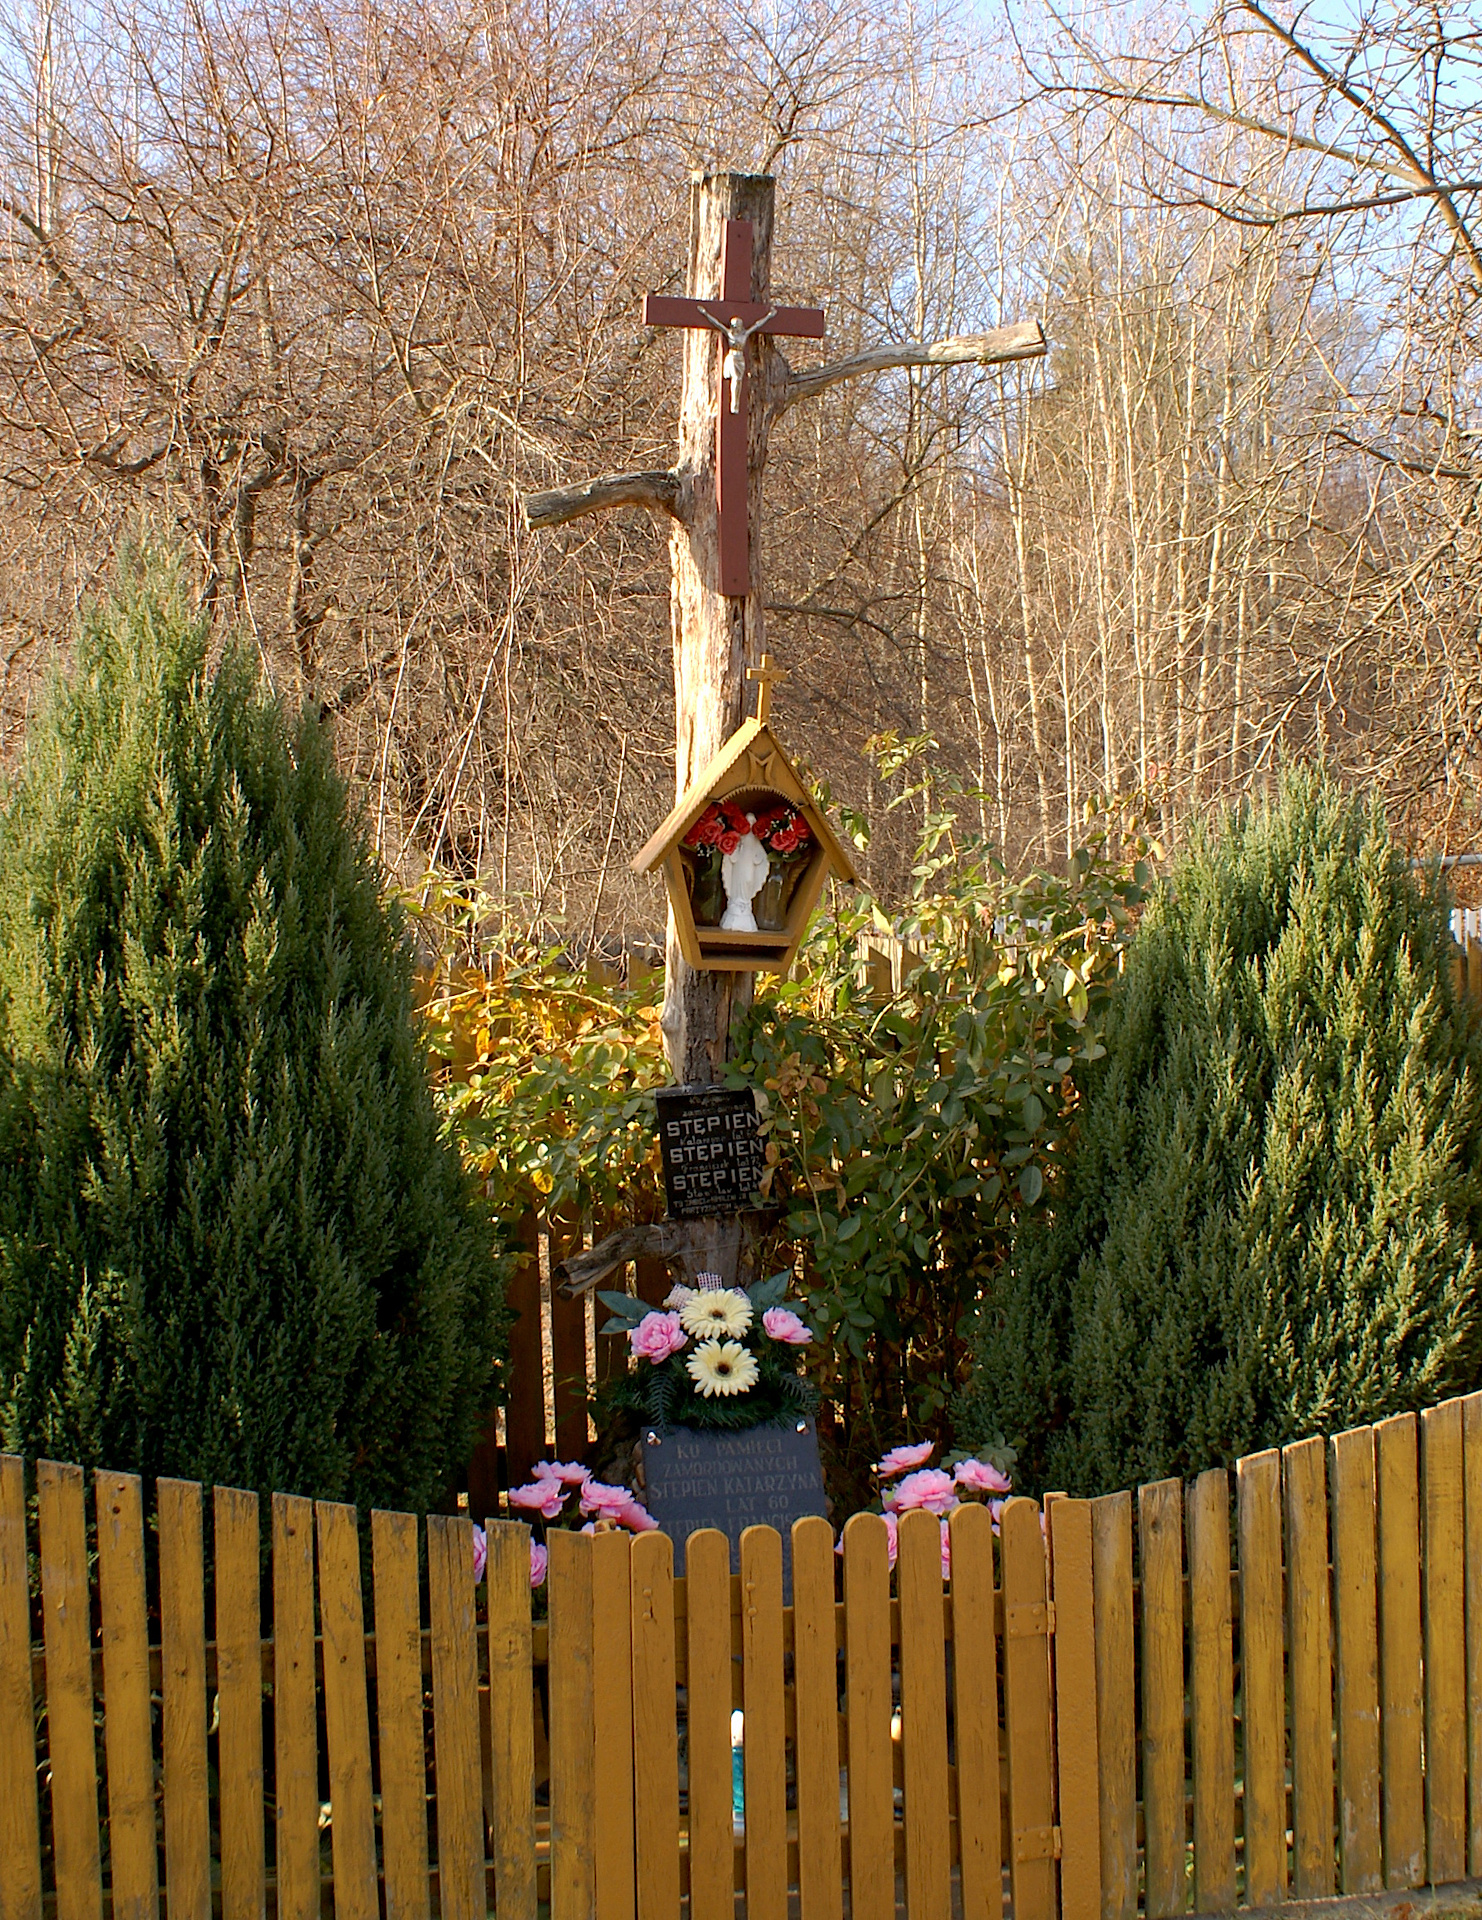 Obelisk i krzyż poświęcony pamięci pomordowanych mieszkańców Lipia przez hitlerowców w dniu 13.10.1943 r.